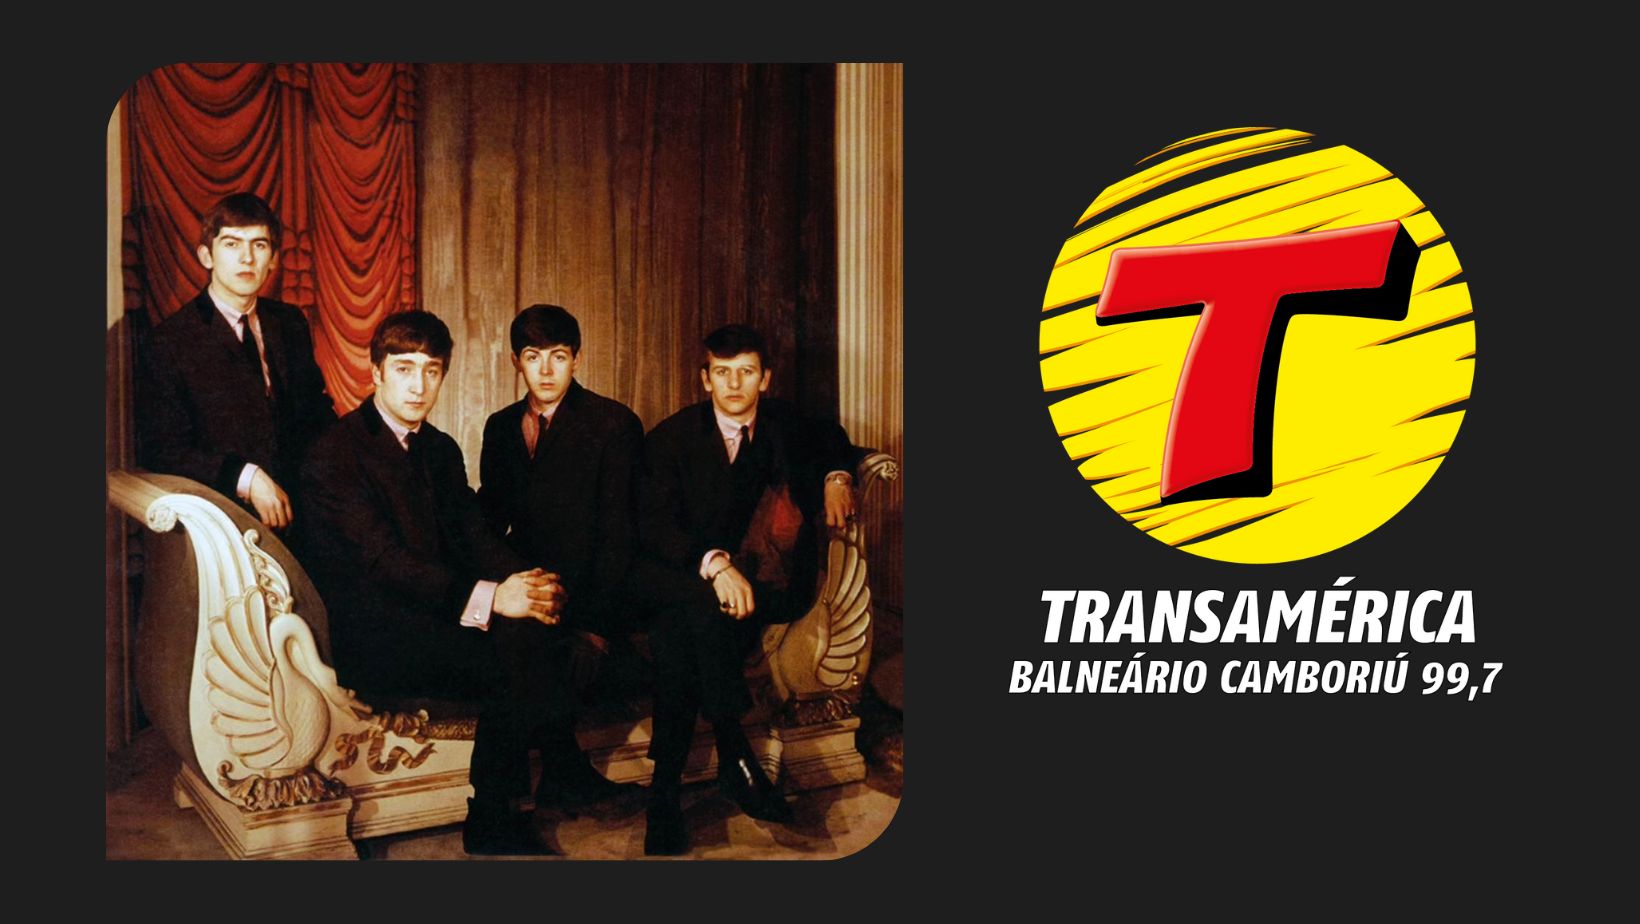 Beatles anunciam 'Now and Then', última música da banda escrita e cantada  por John Lennon - Rádio Transamérica 99,7 FM